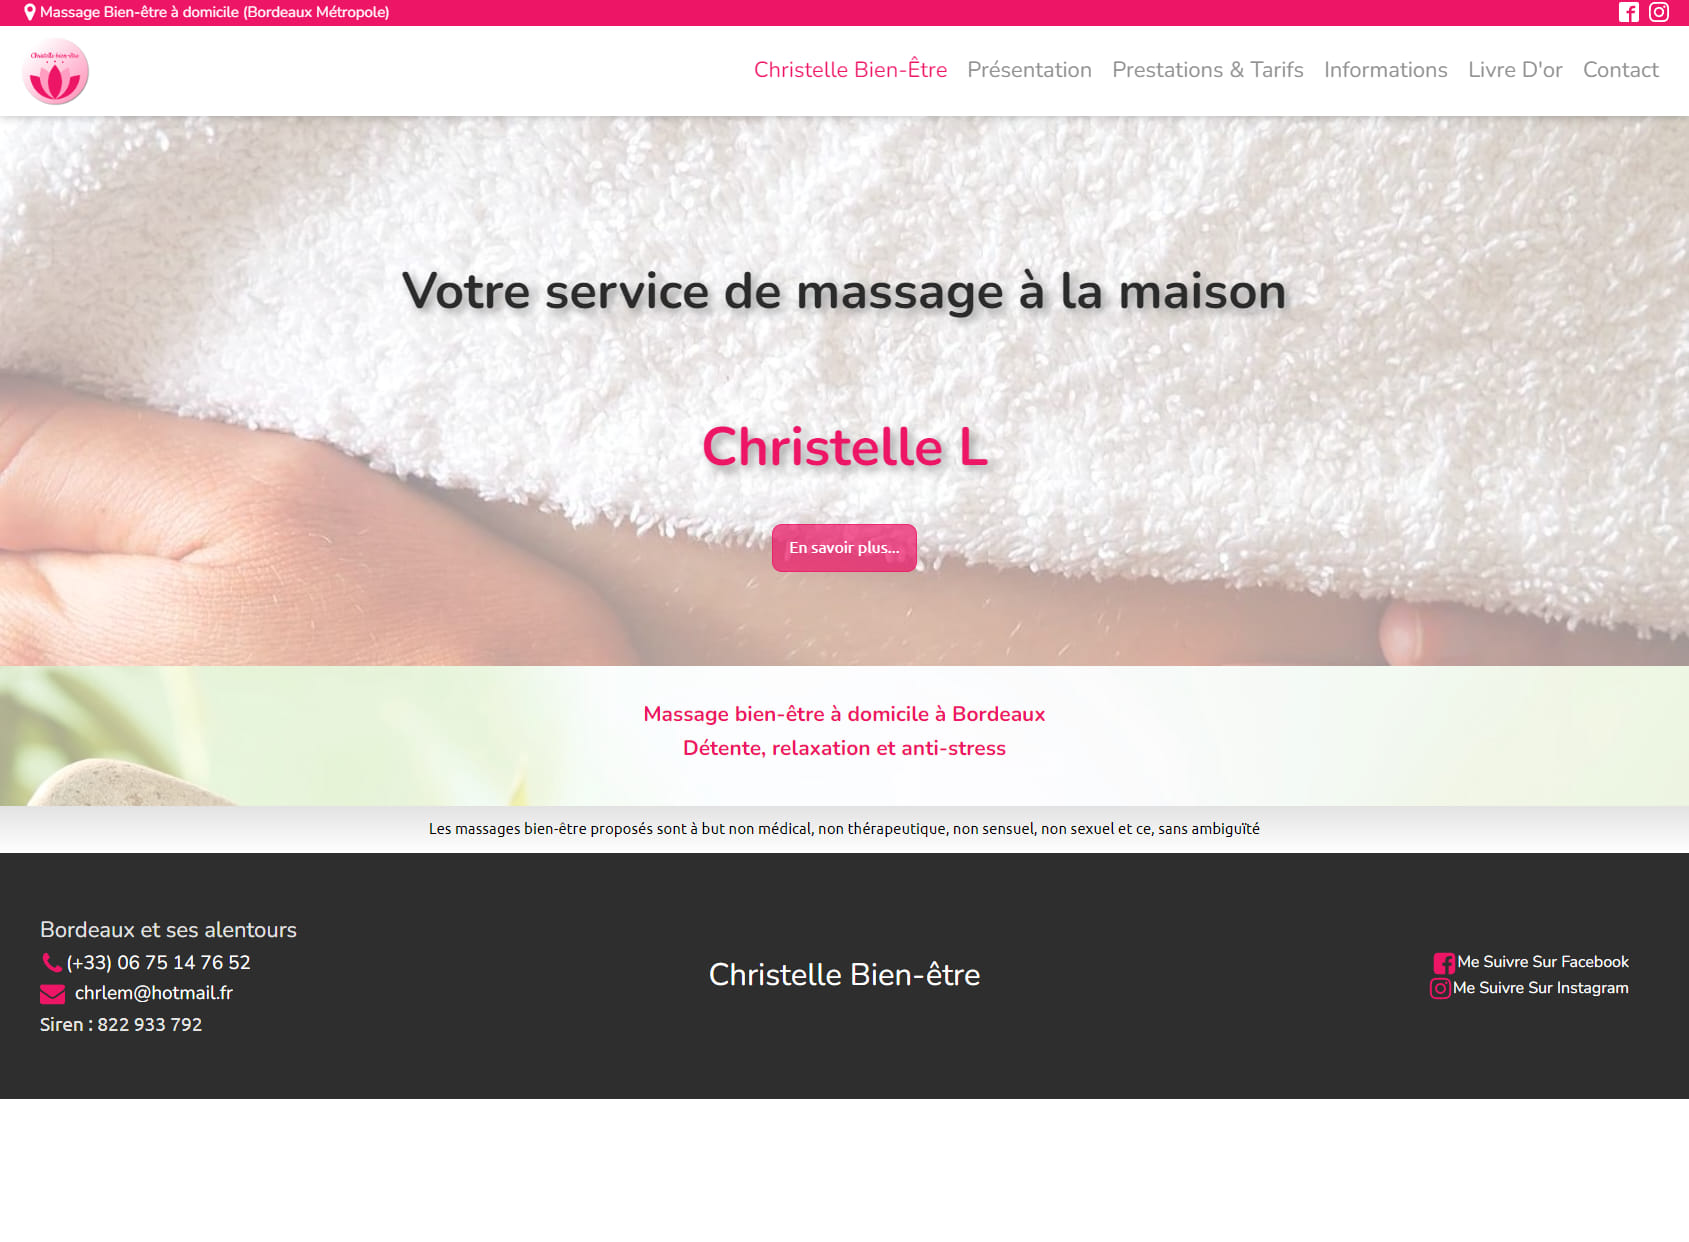 Christelle Bien-être - Massage à Domicile Bordeaux